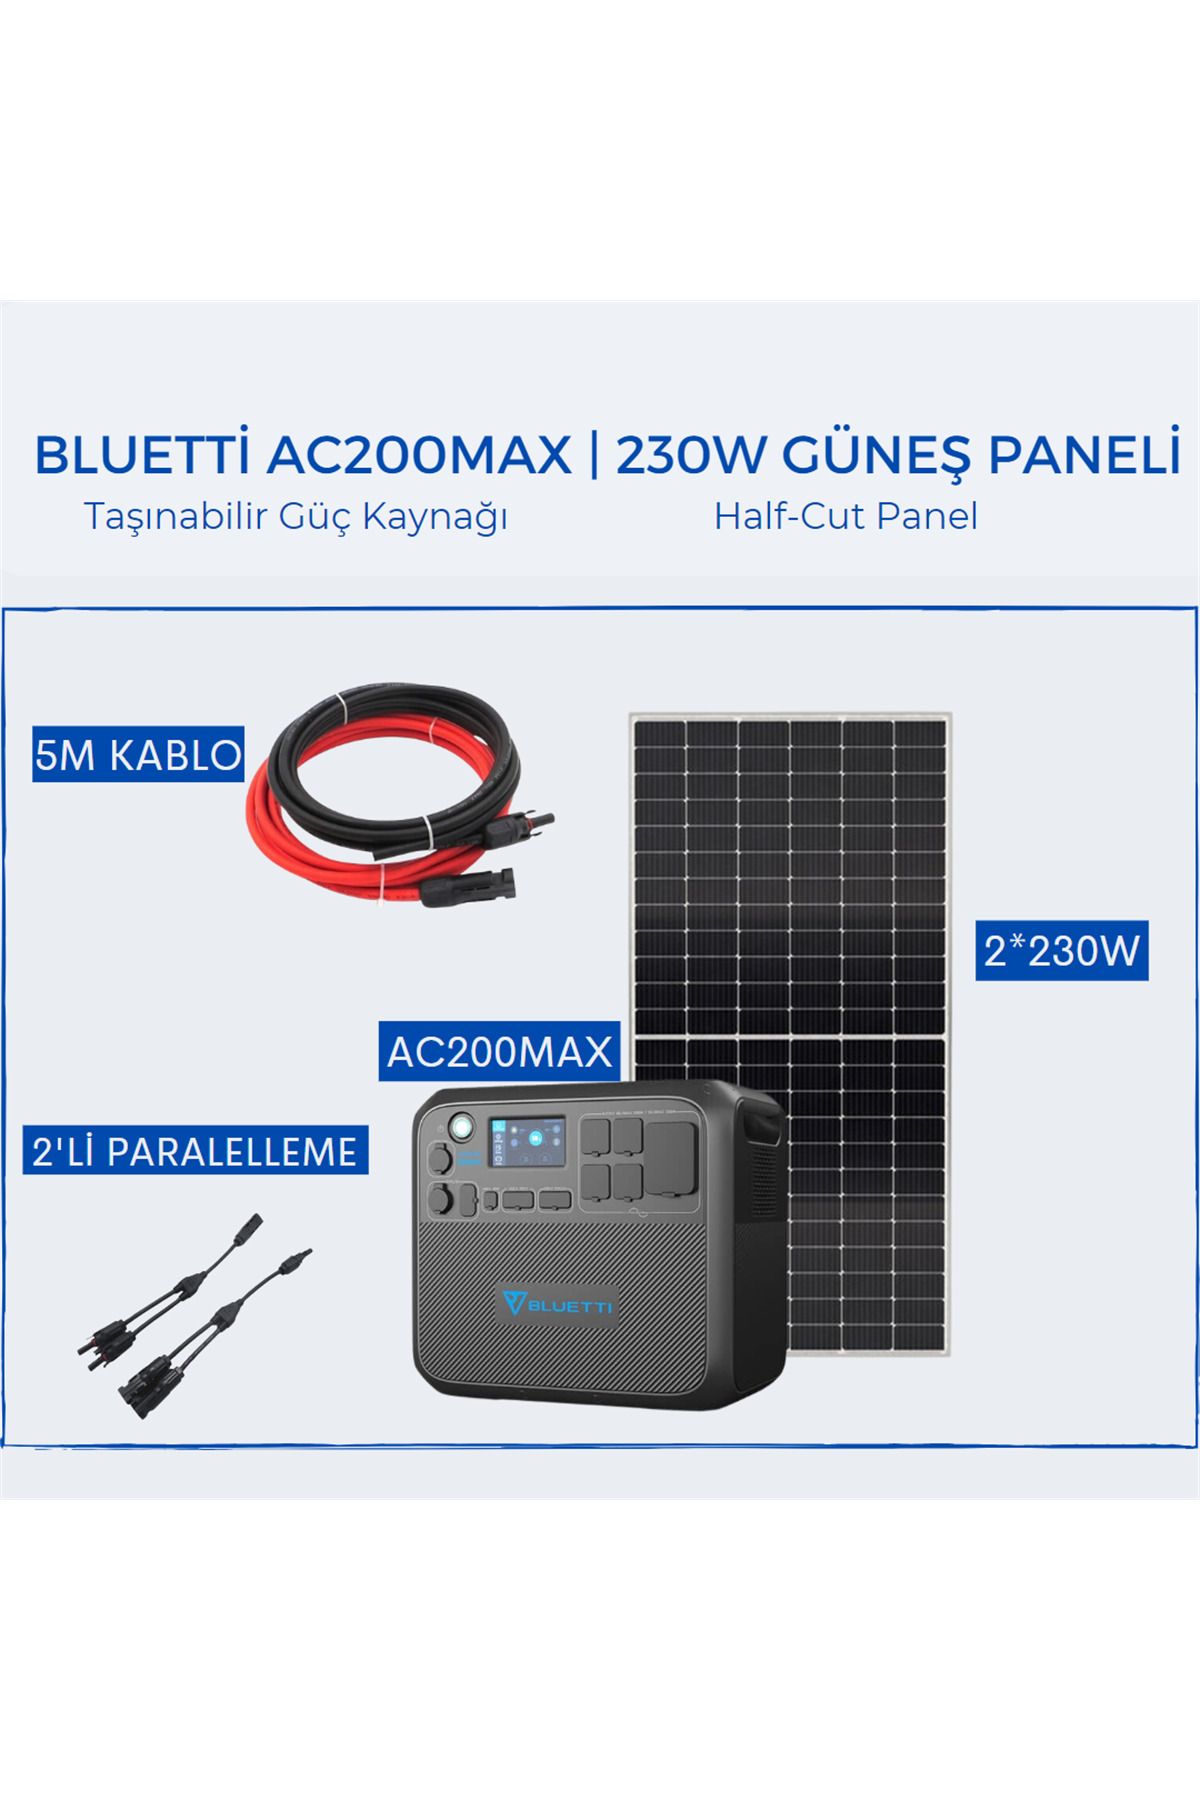 Bluetti Ac200max Taşınabilir Güç Kaynağı | 230w Monokristal Güneş Paneli Paketi